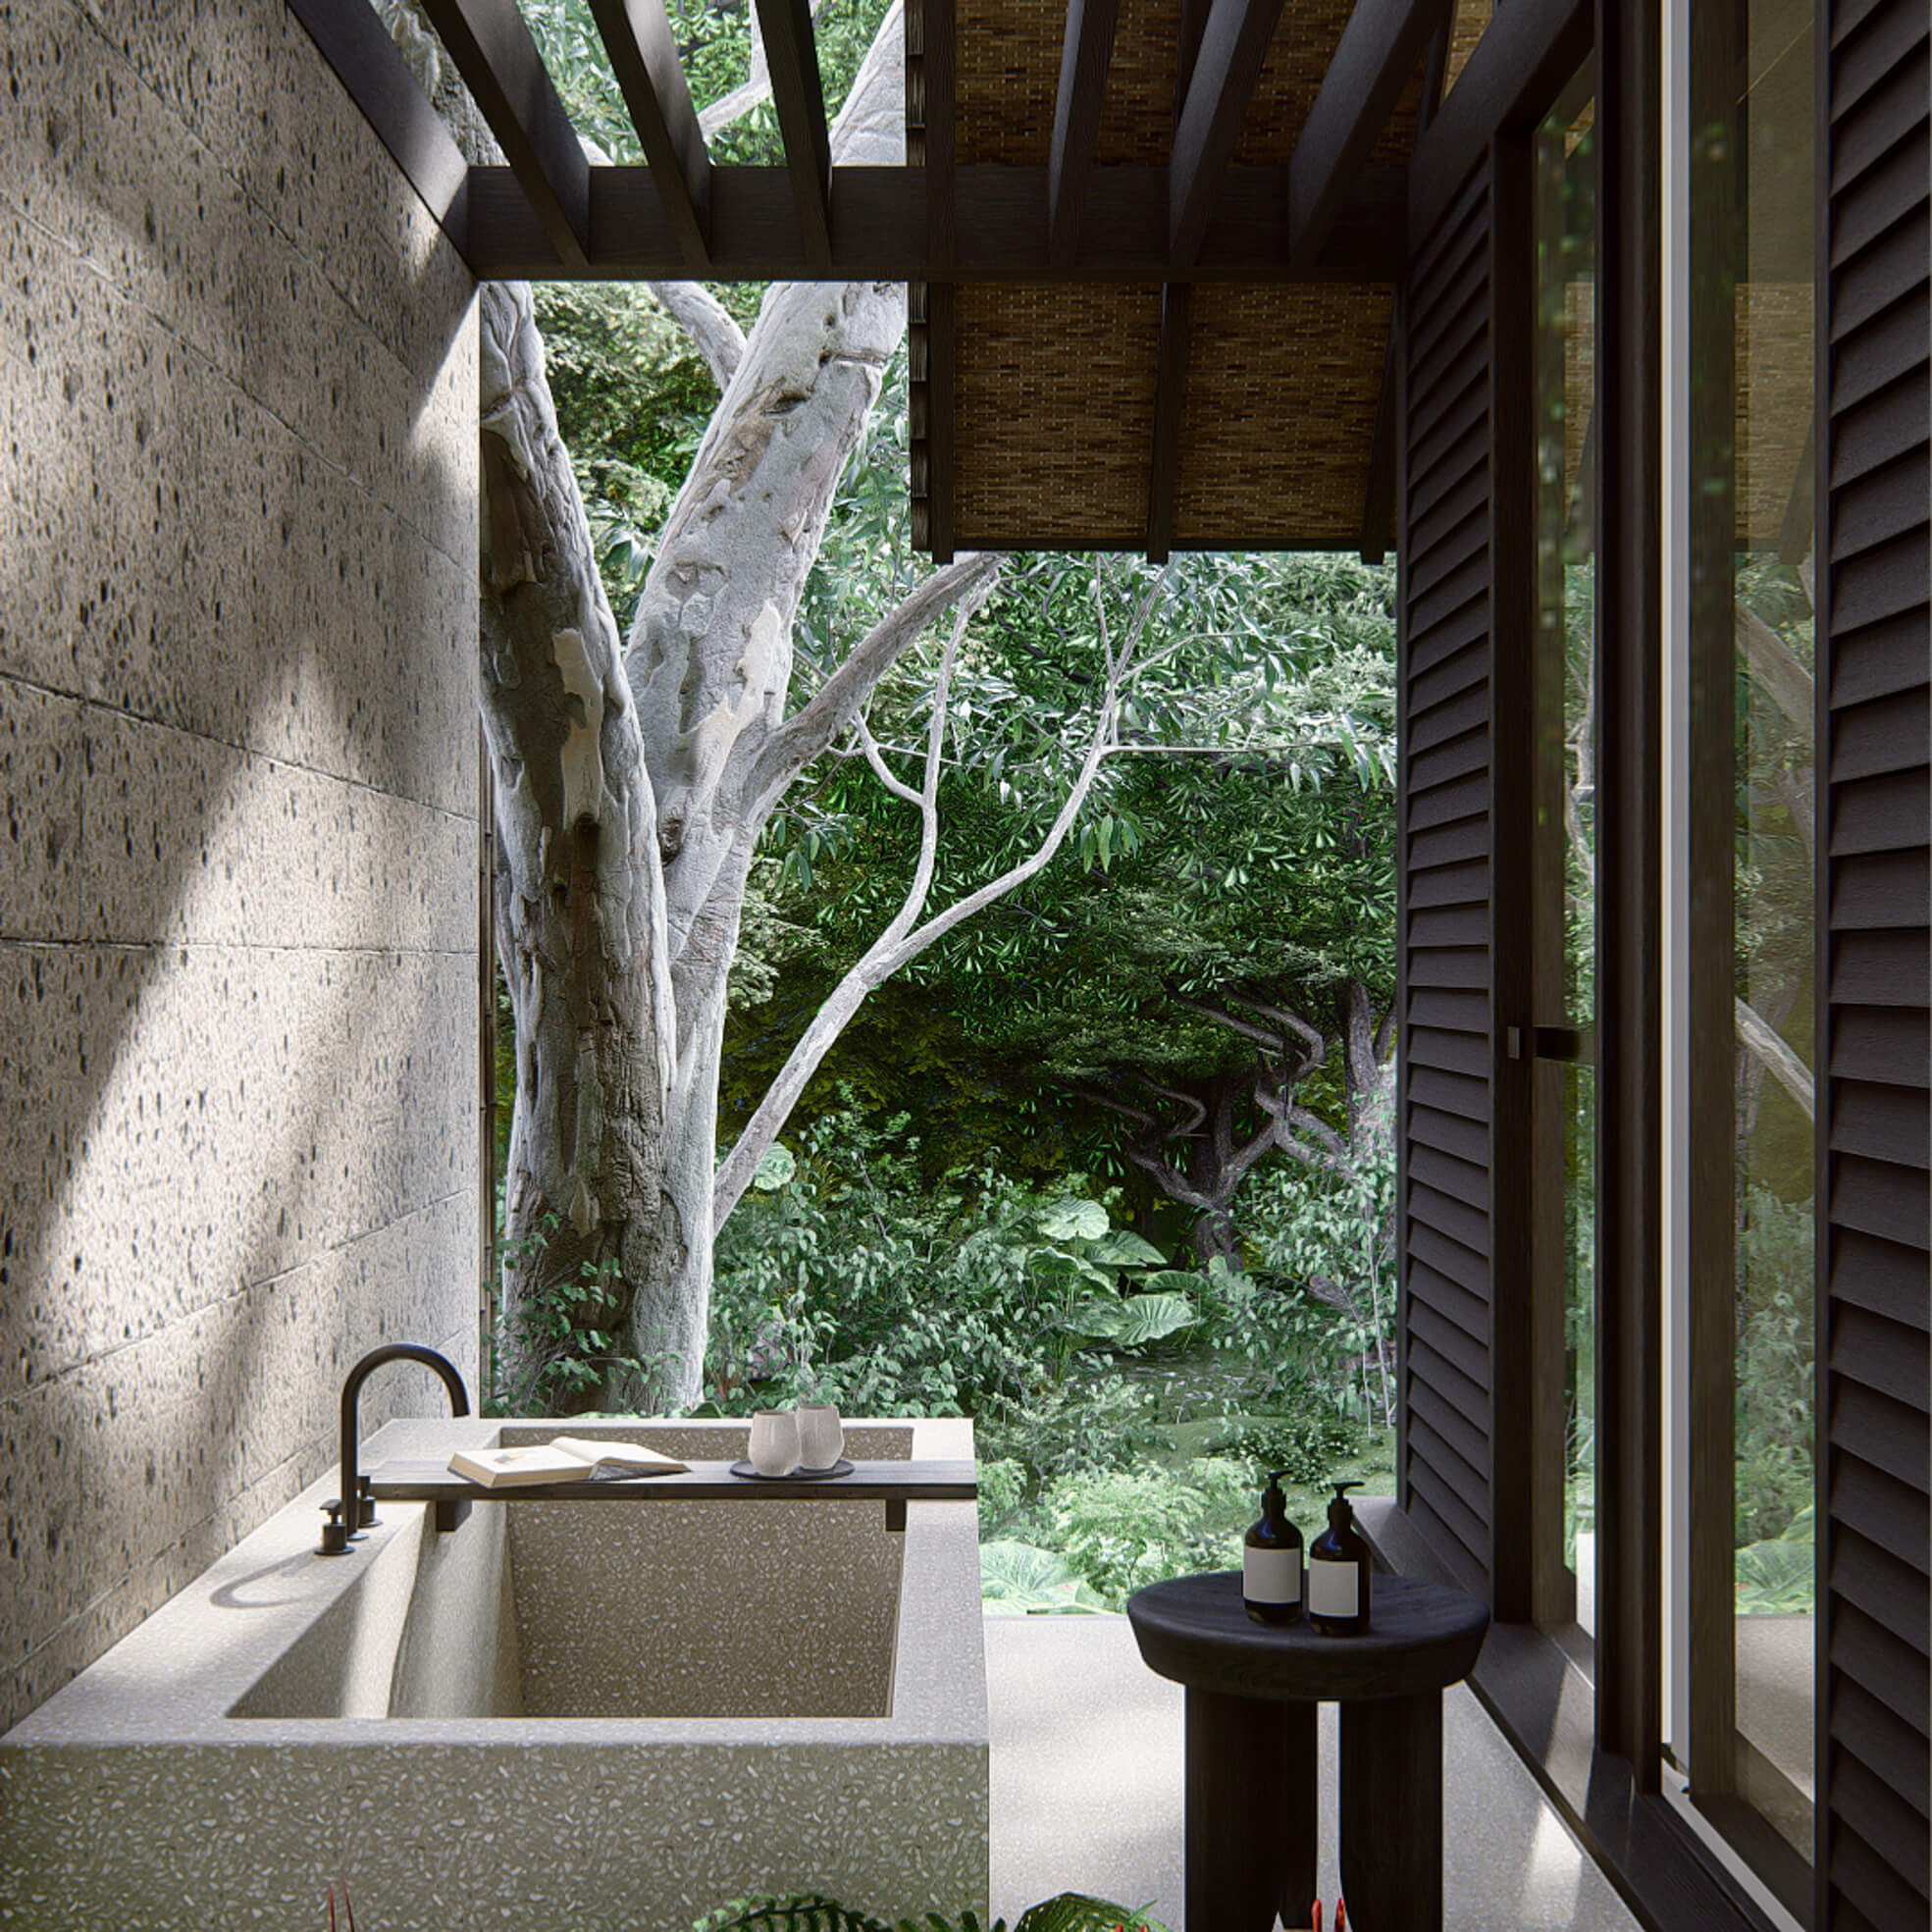 Typical bathtub area at Villa Nyanyi Bali